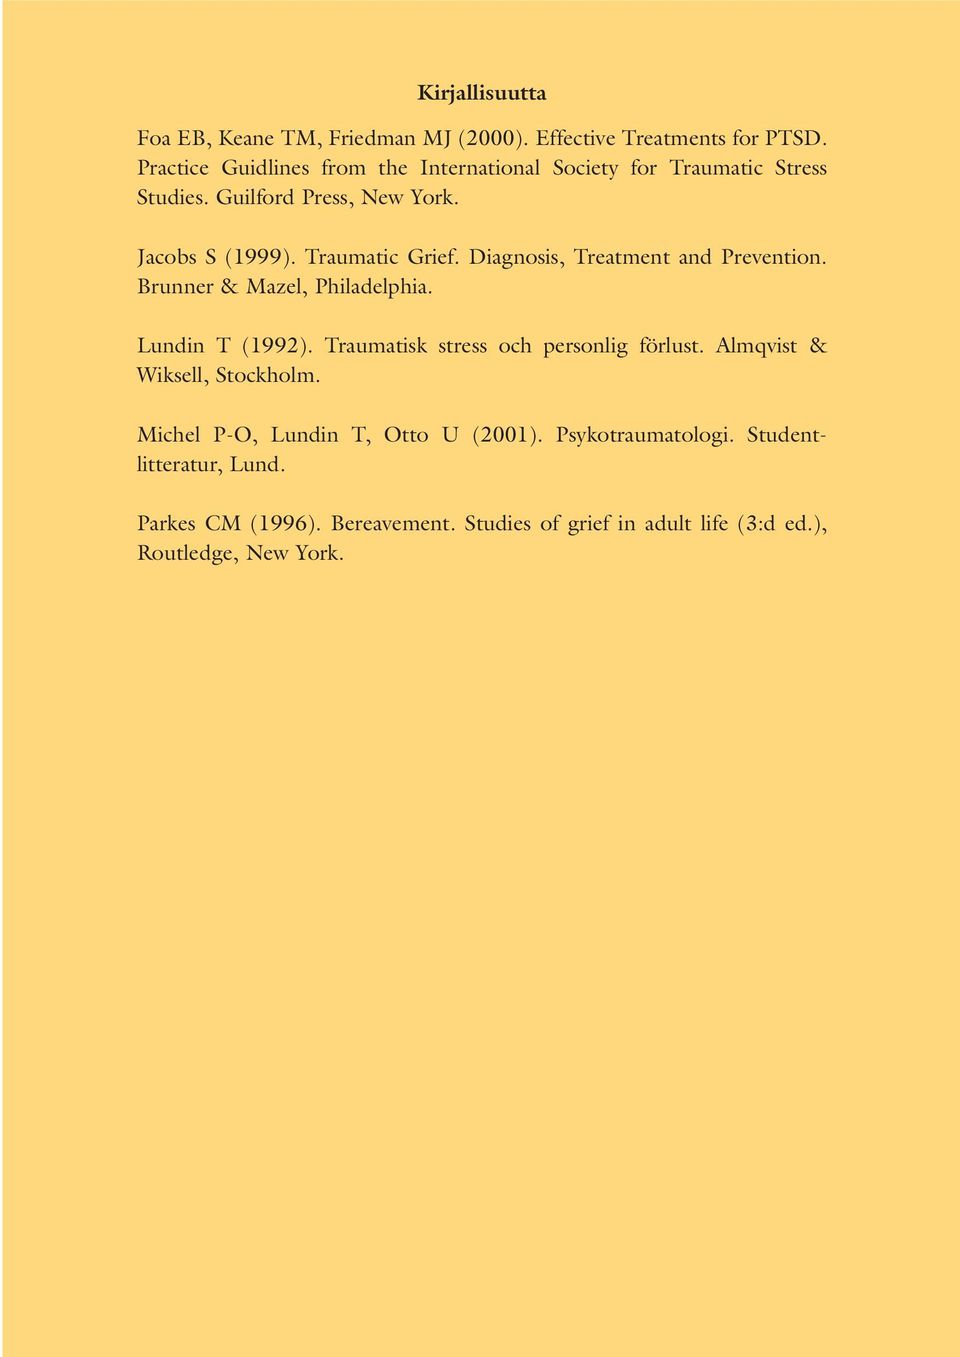 Diagnosis, Treatment and Prevention. Brunner & Mazel, Philadelphia. Lundin T (1992). Traumatisk stress och personlig förlust.